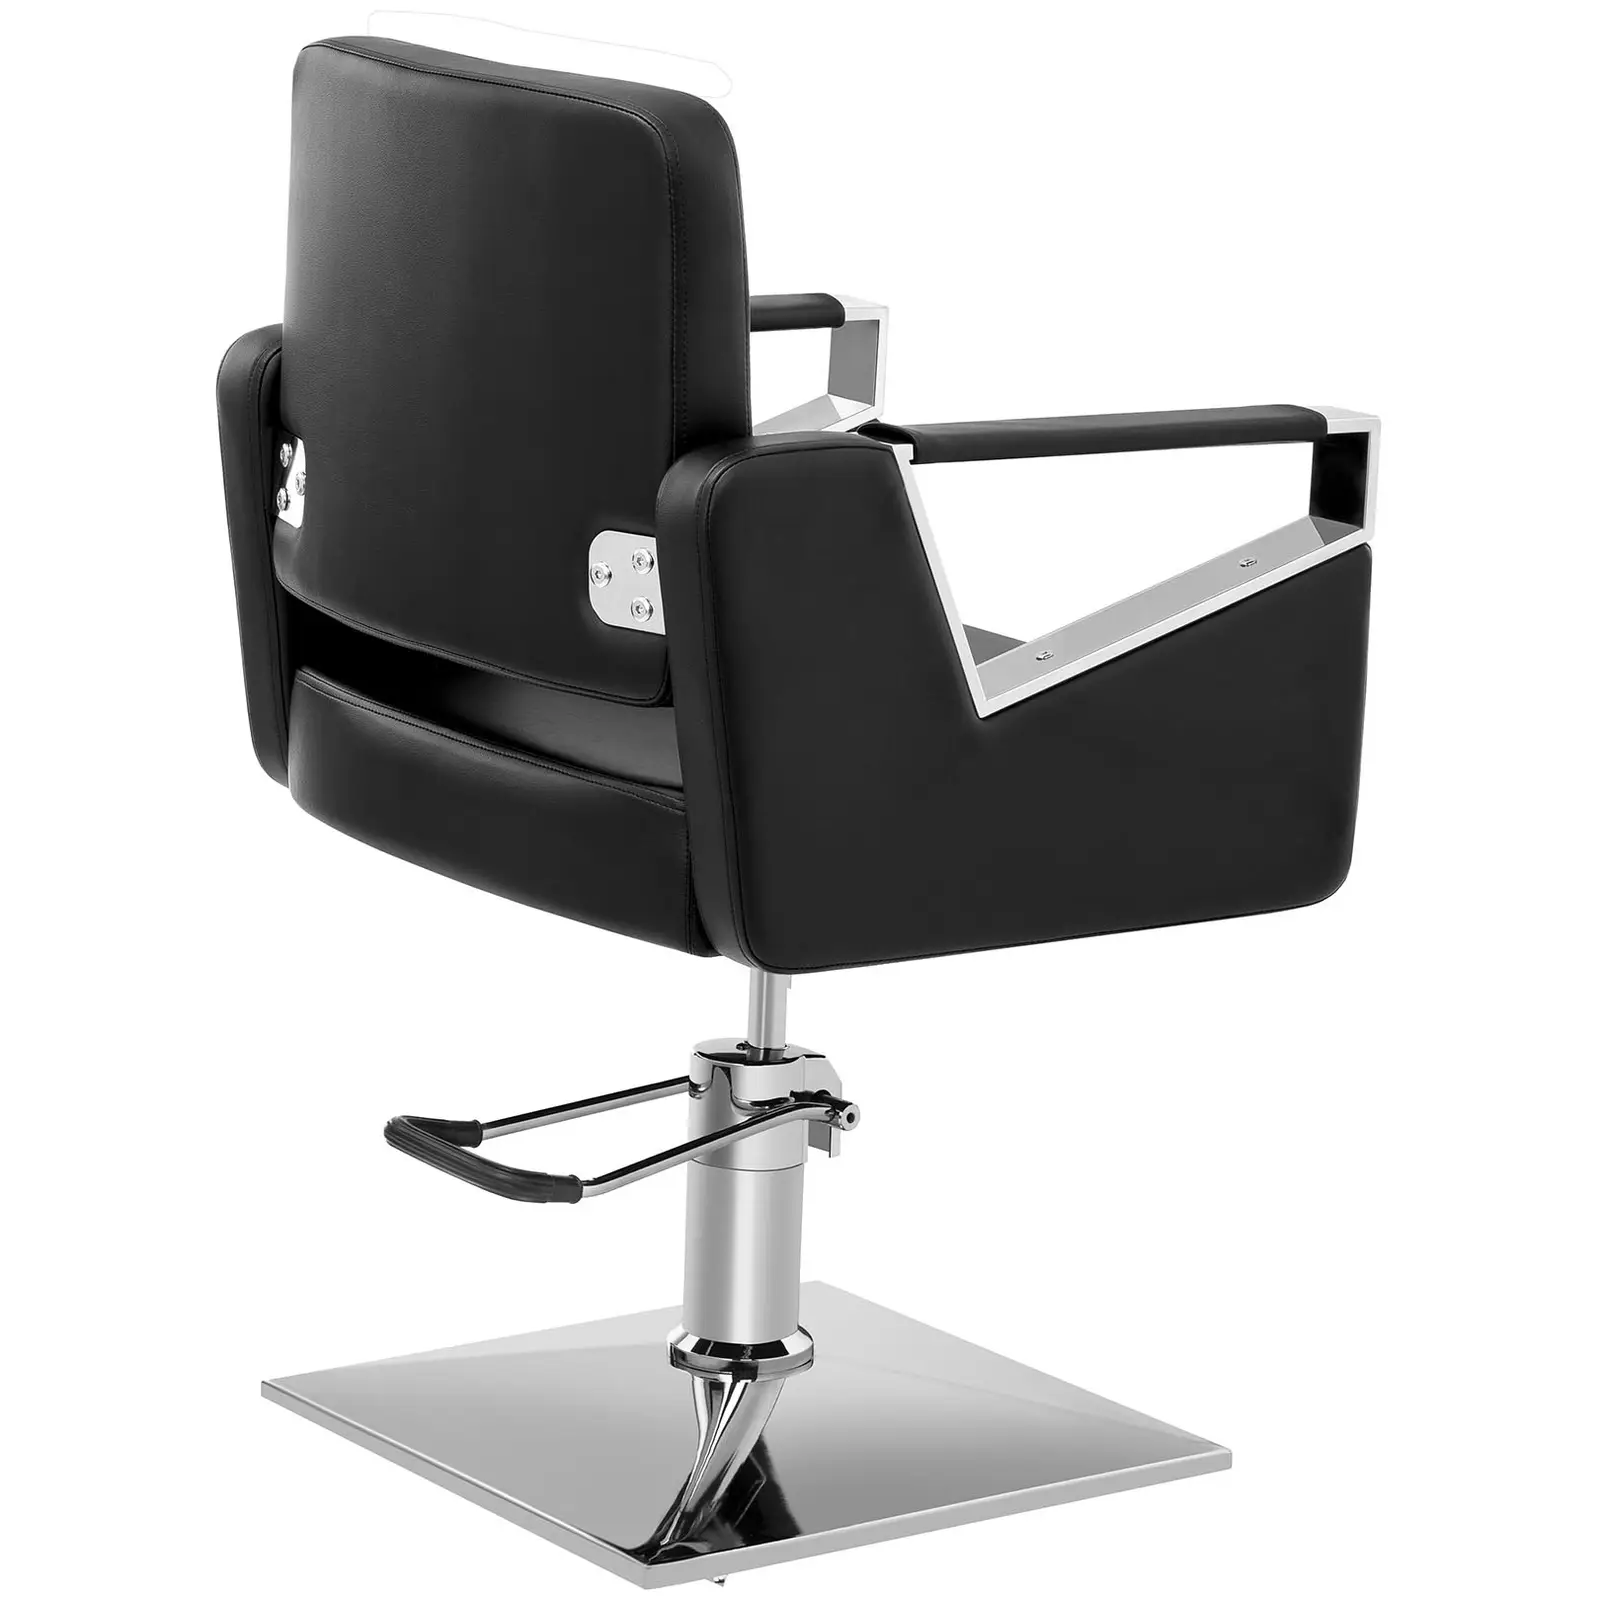 Fotel fryzjerski - 445 - 550 mm - 200 kg - czarny